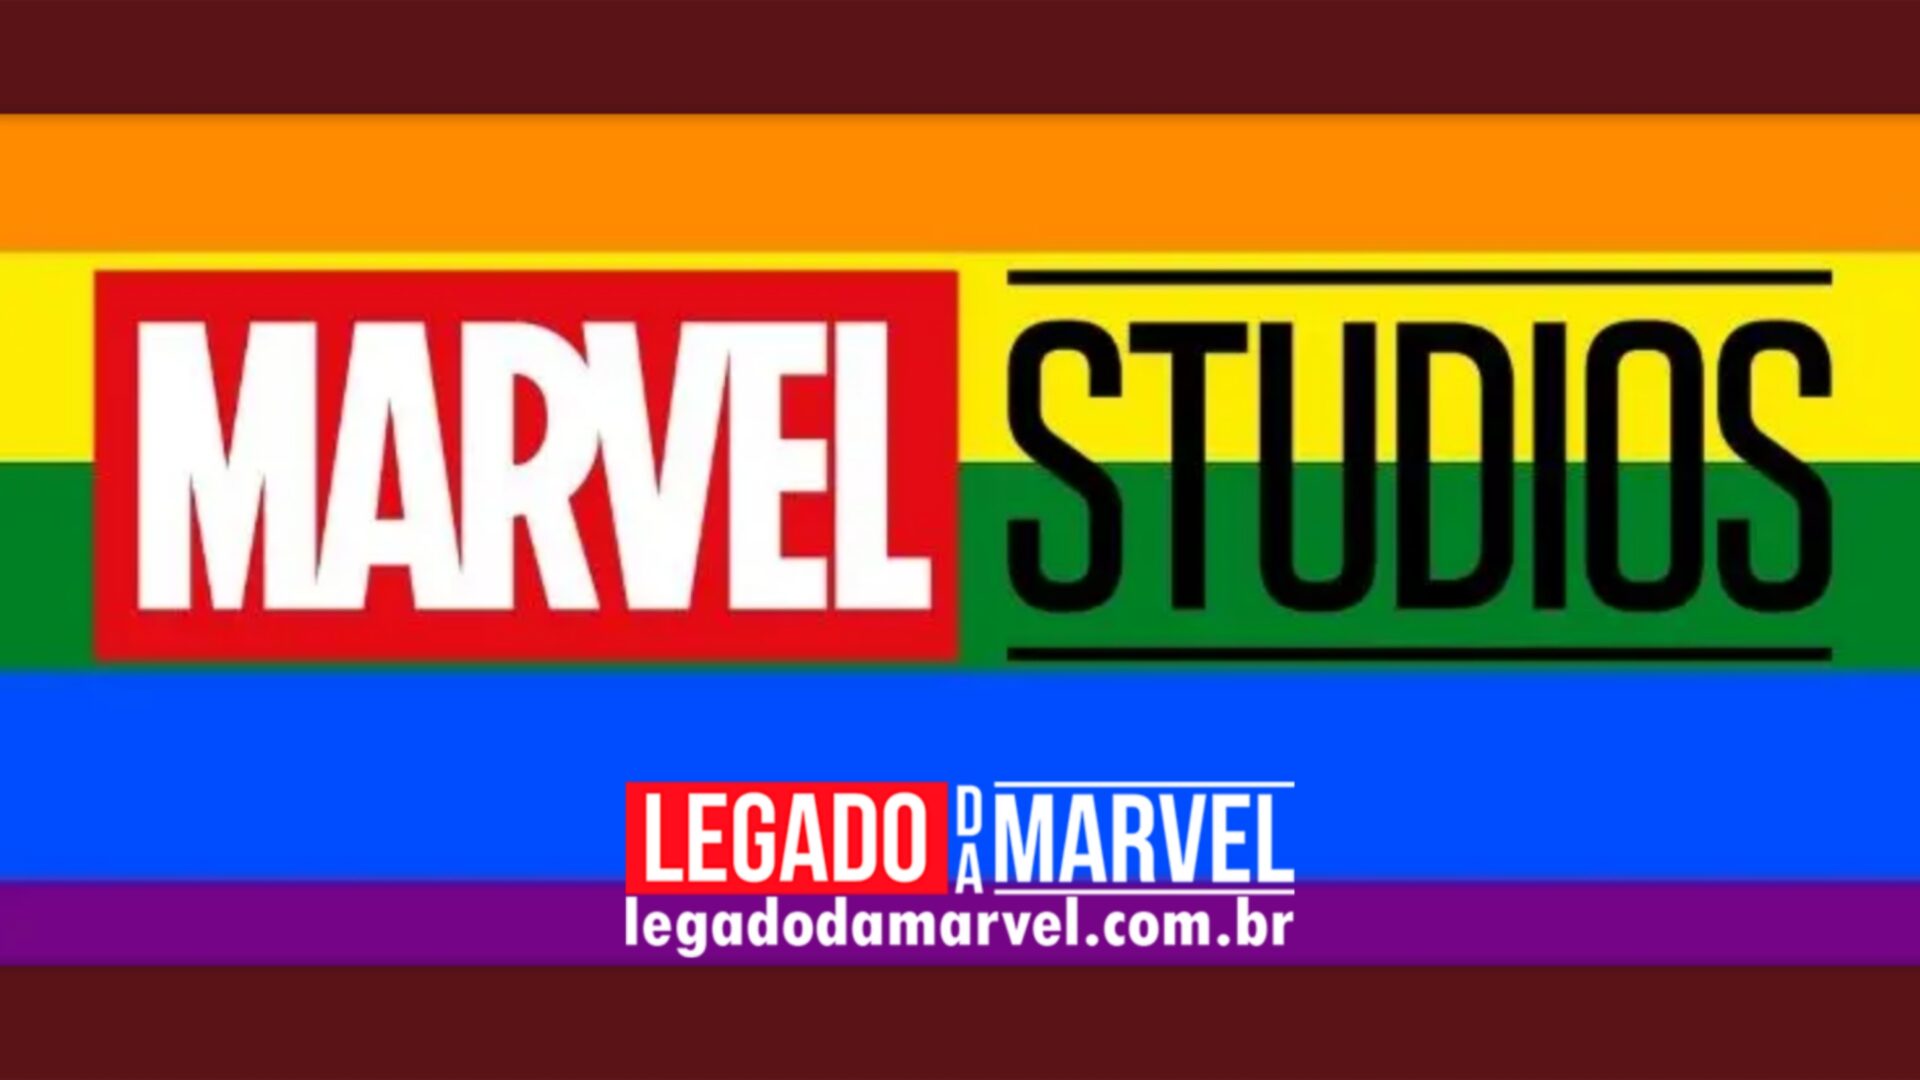  Chefe da Marvel Studios se pronuncia contra a Disney em movimento anti-LGBTQIA+